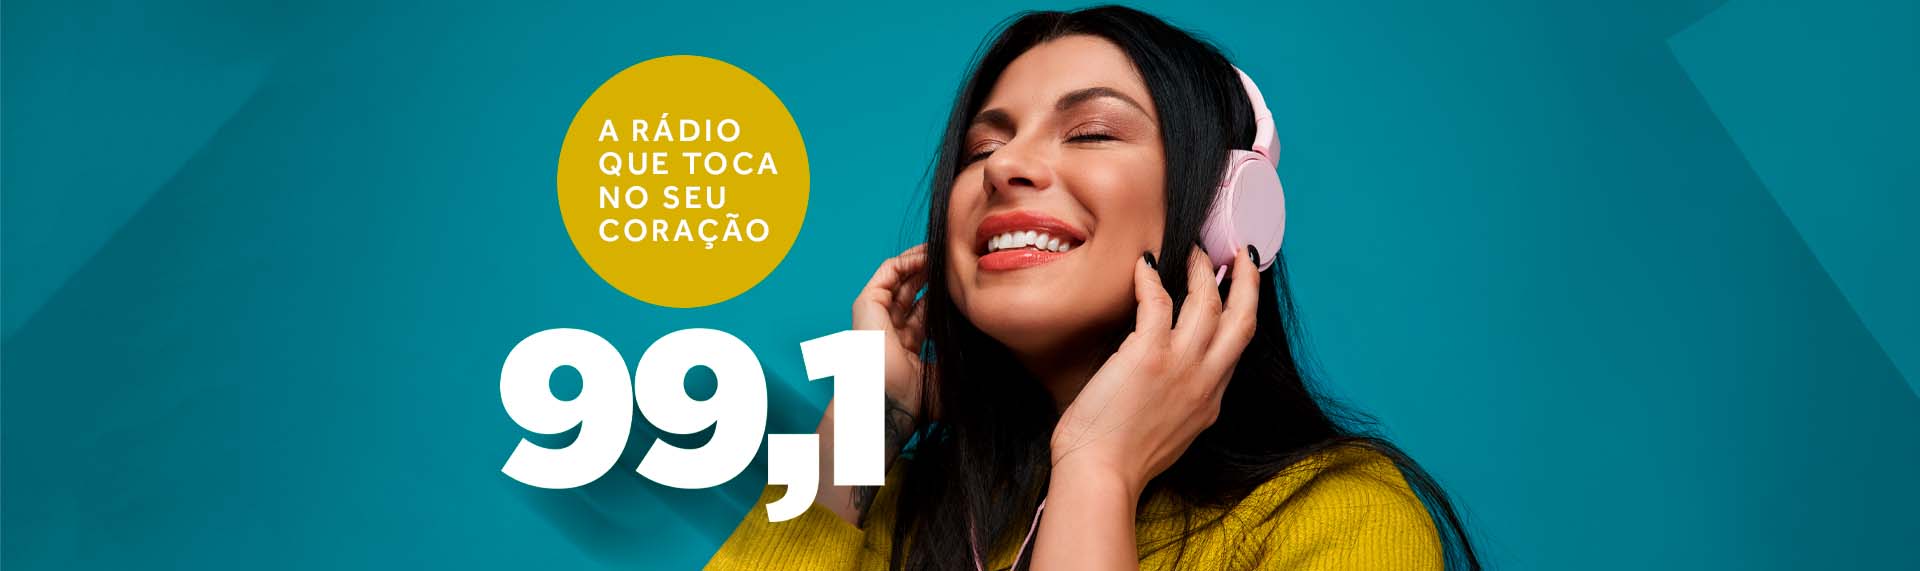 Rádio Fly 99 FM Ganha Destaque na Baixada Santista em Pouco Tempo